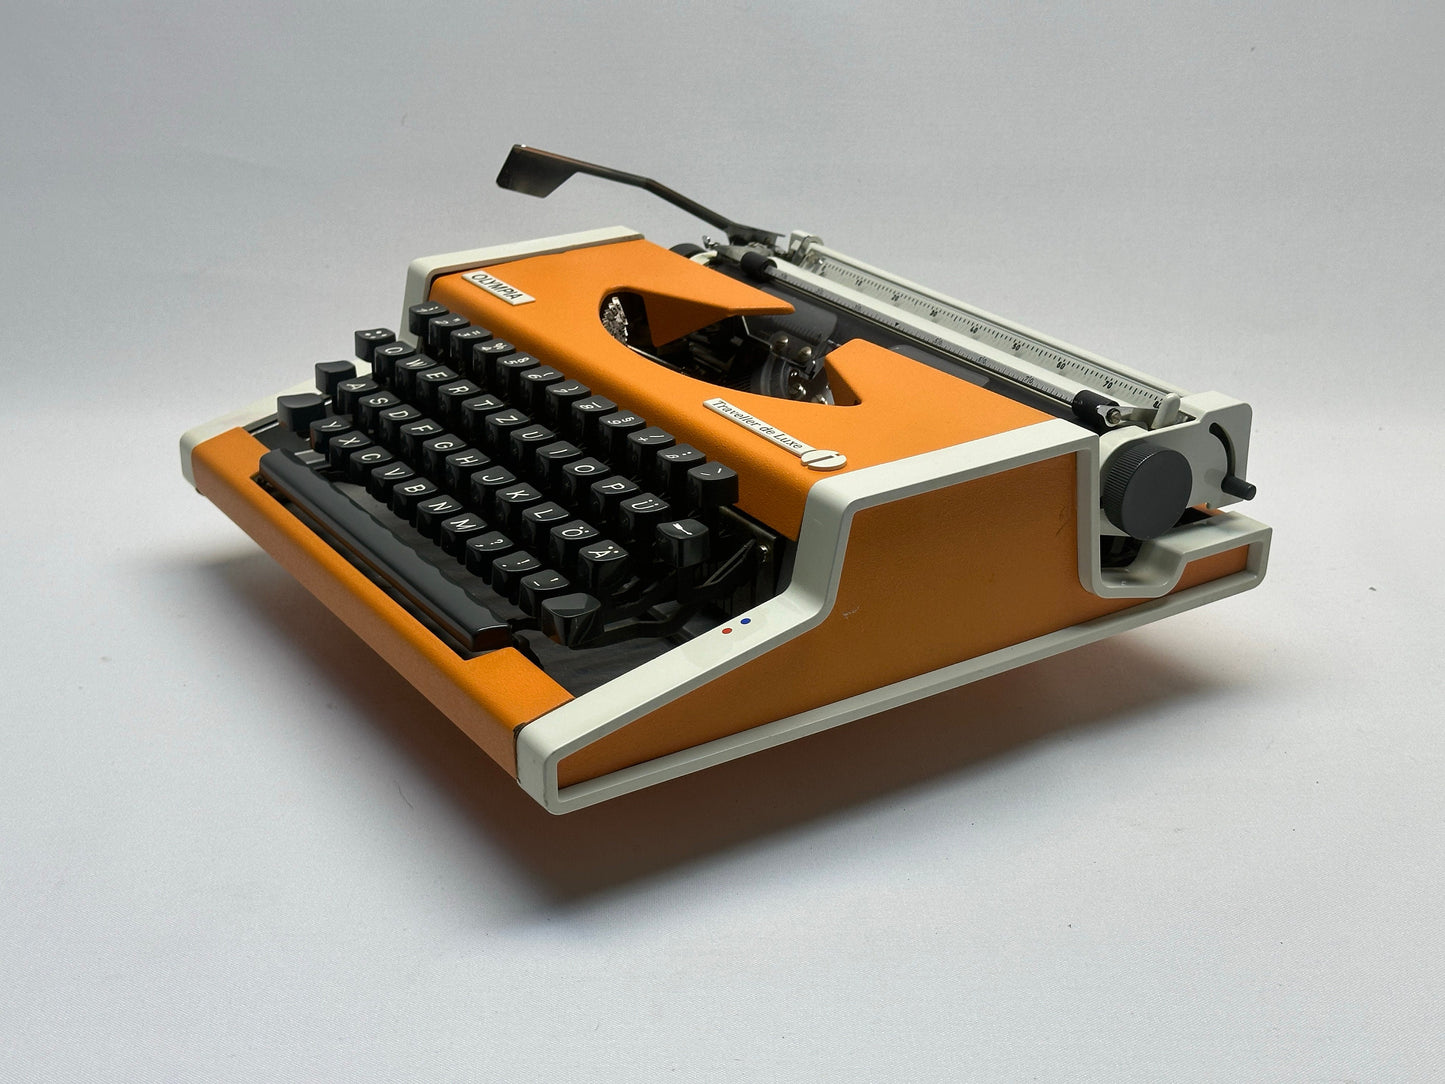 Orange Olympia Typewriter with Black Keyboard, White Bag - 1960 Model